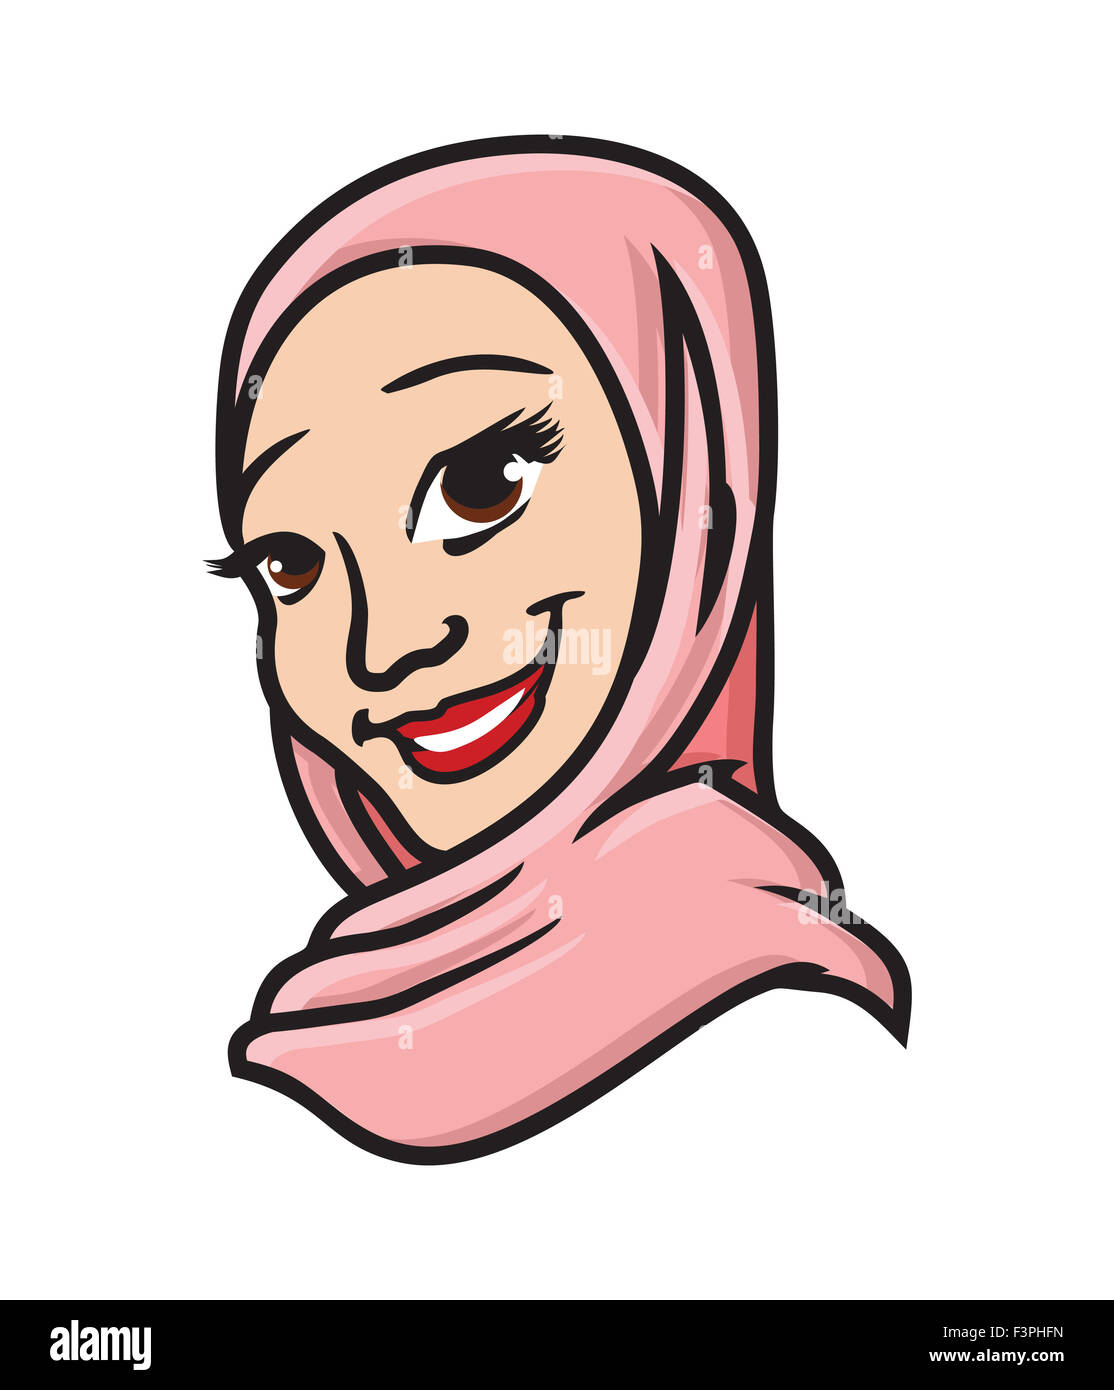 Vektor-Illustrationen der muslimischen Frau Stockfoto